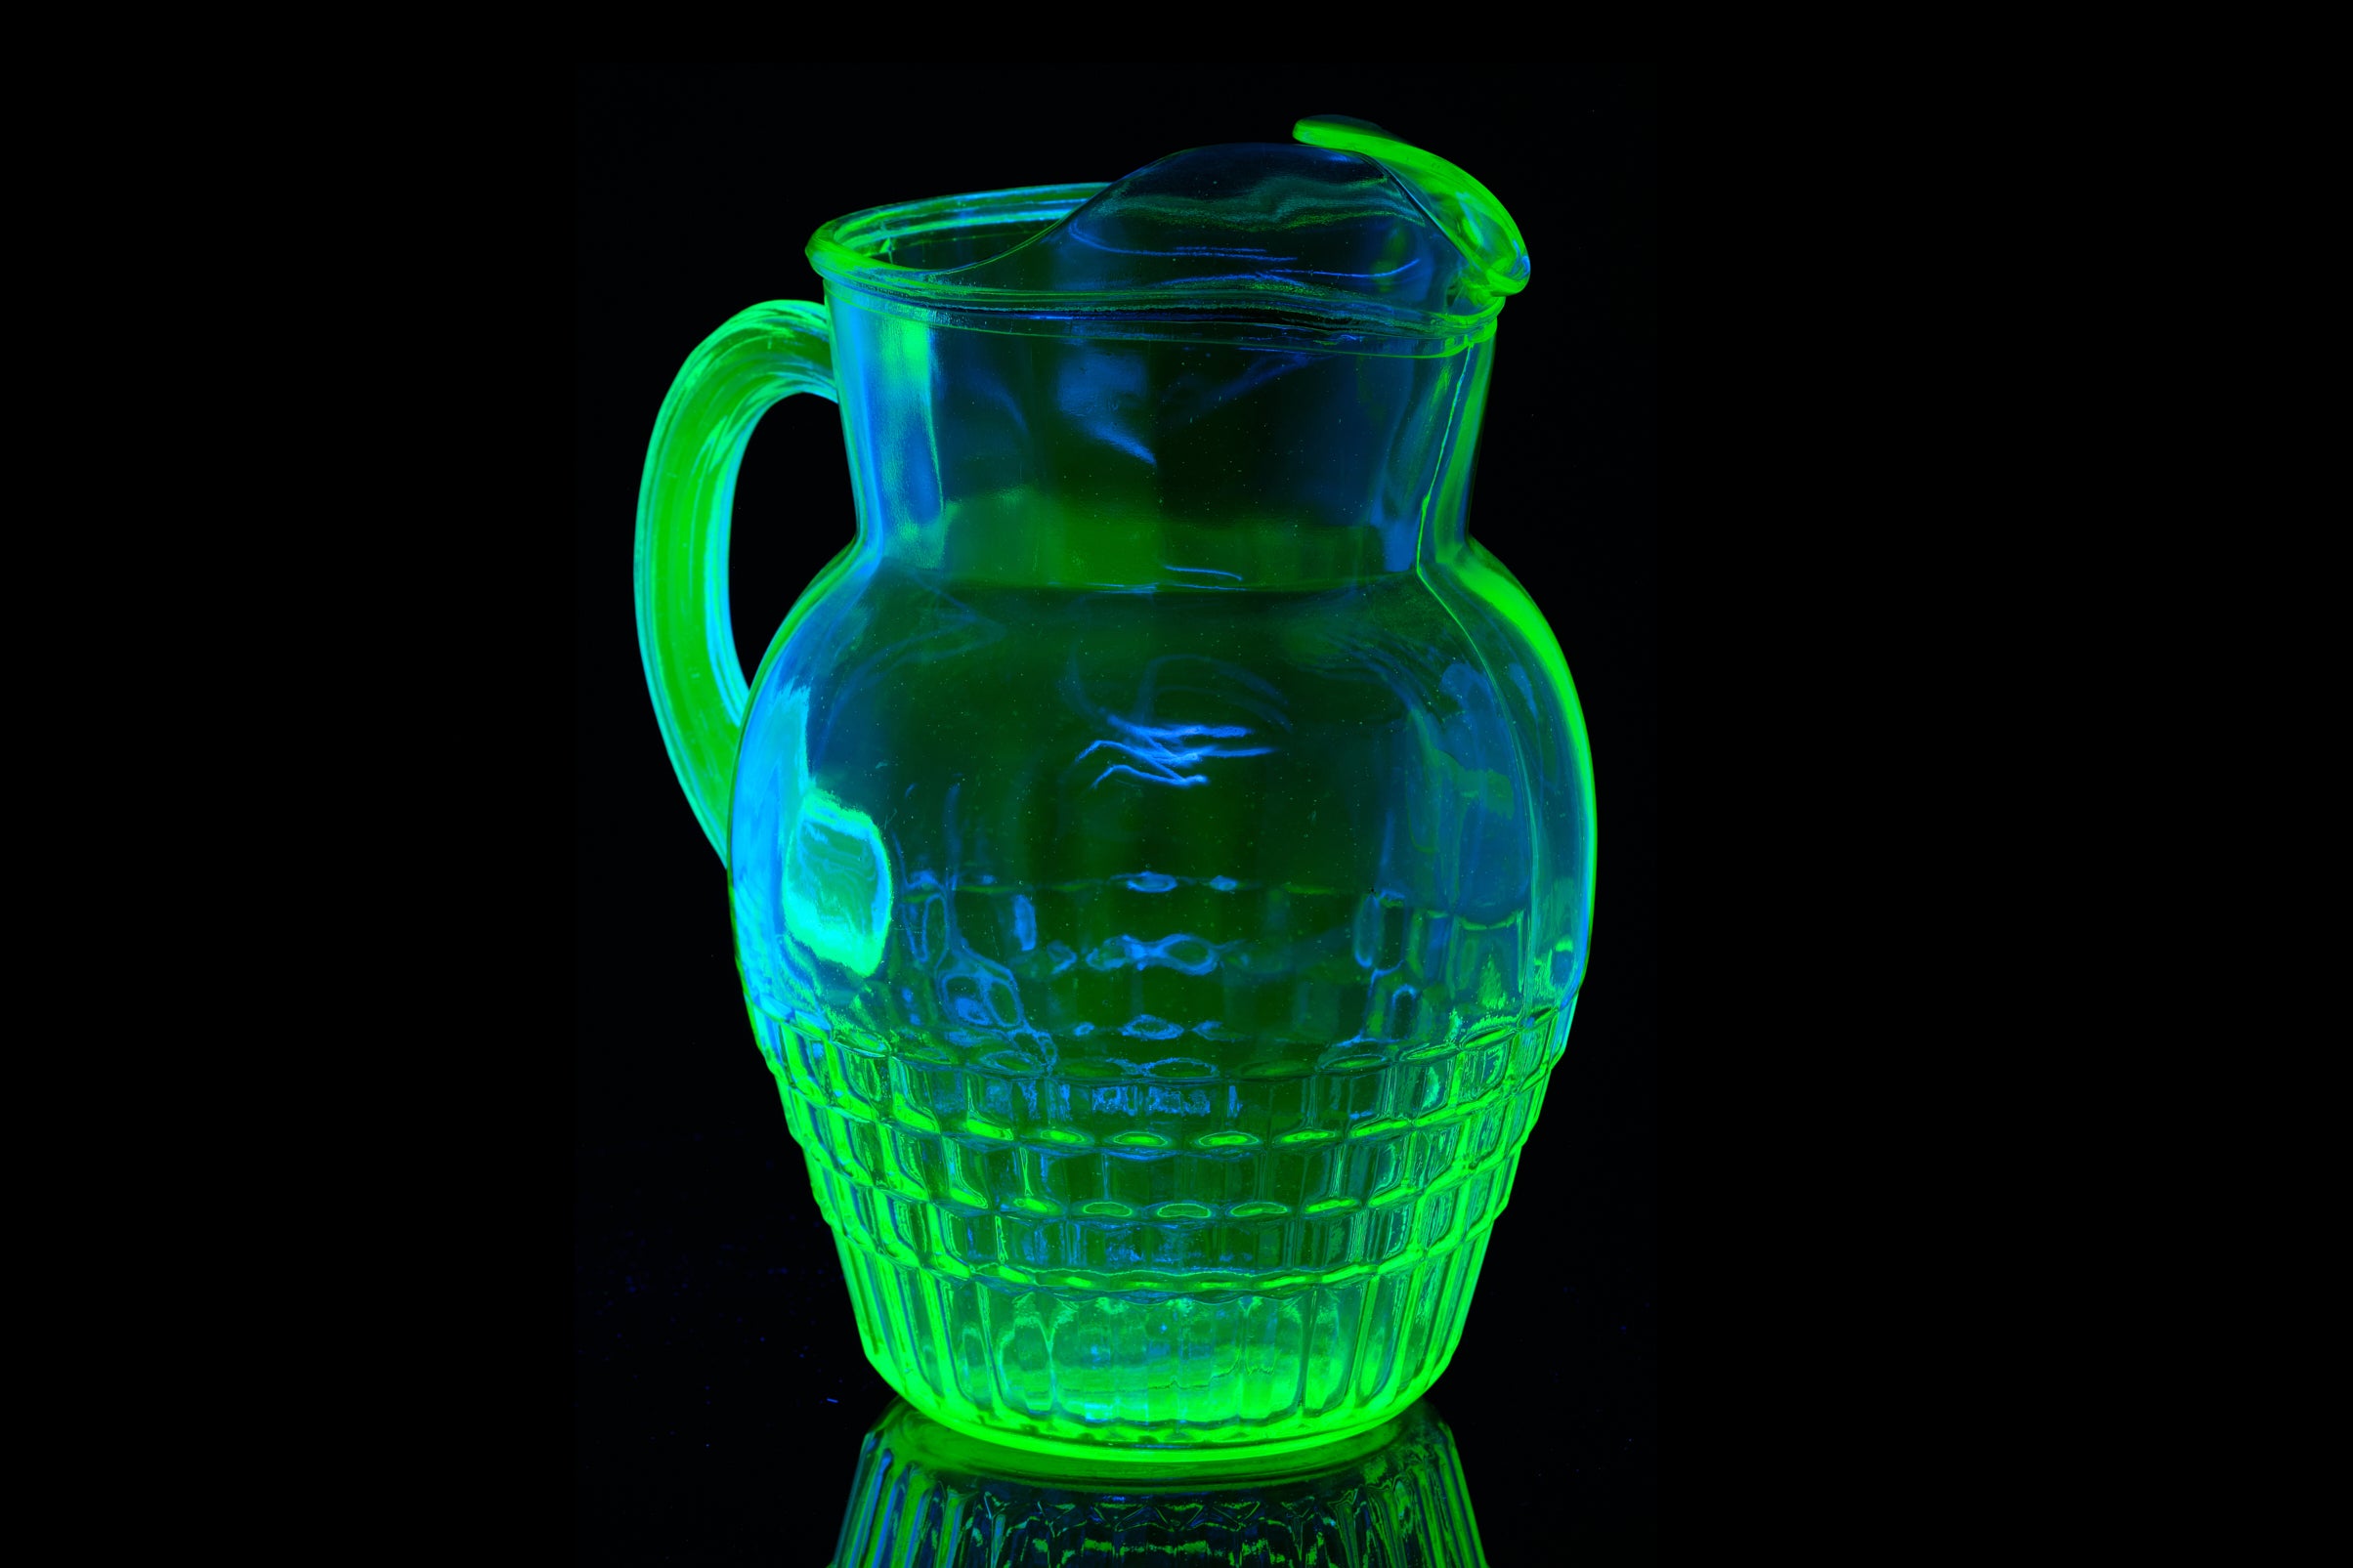 Edwardian Green Glass Jug Containing Uranium.